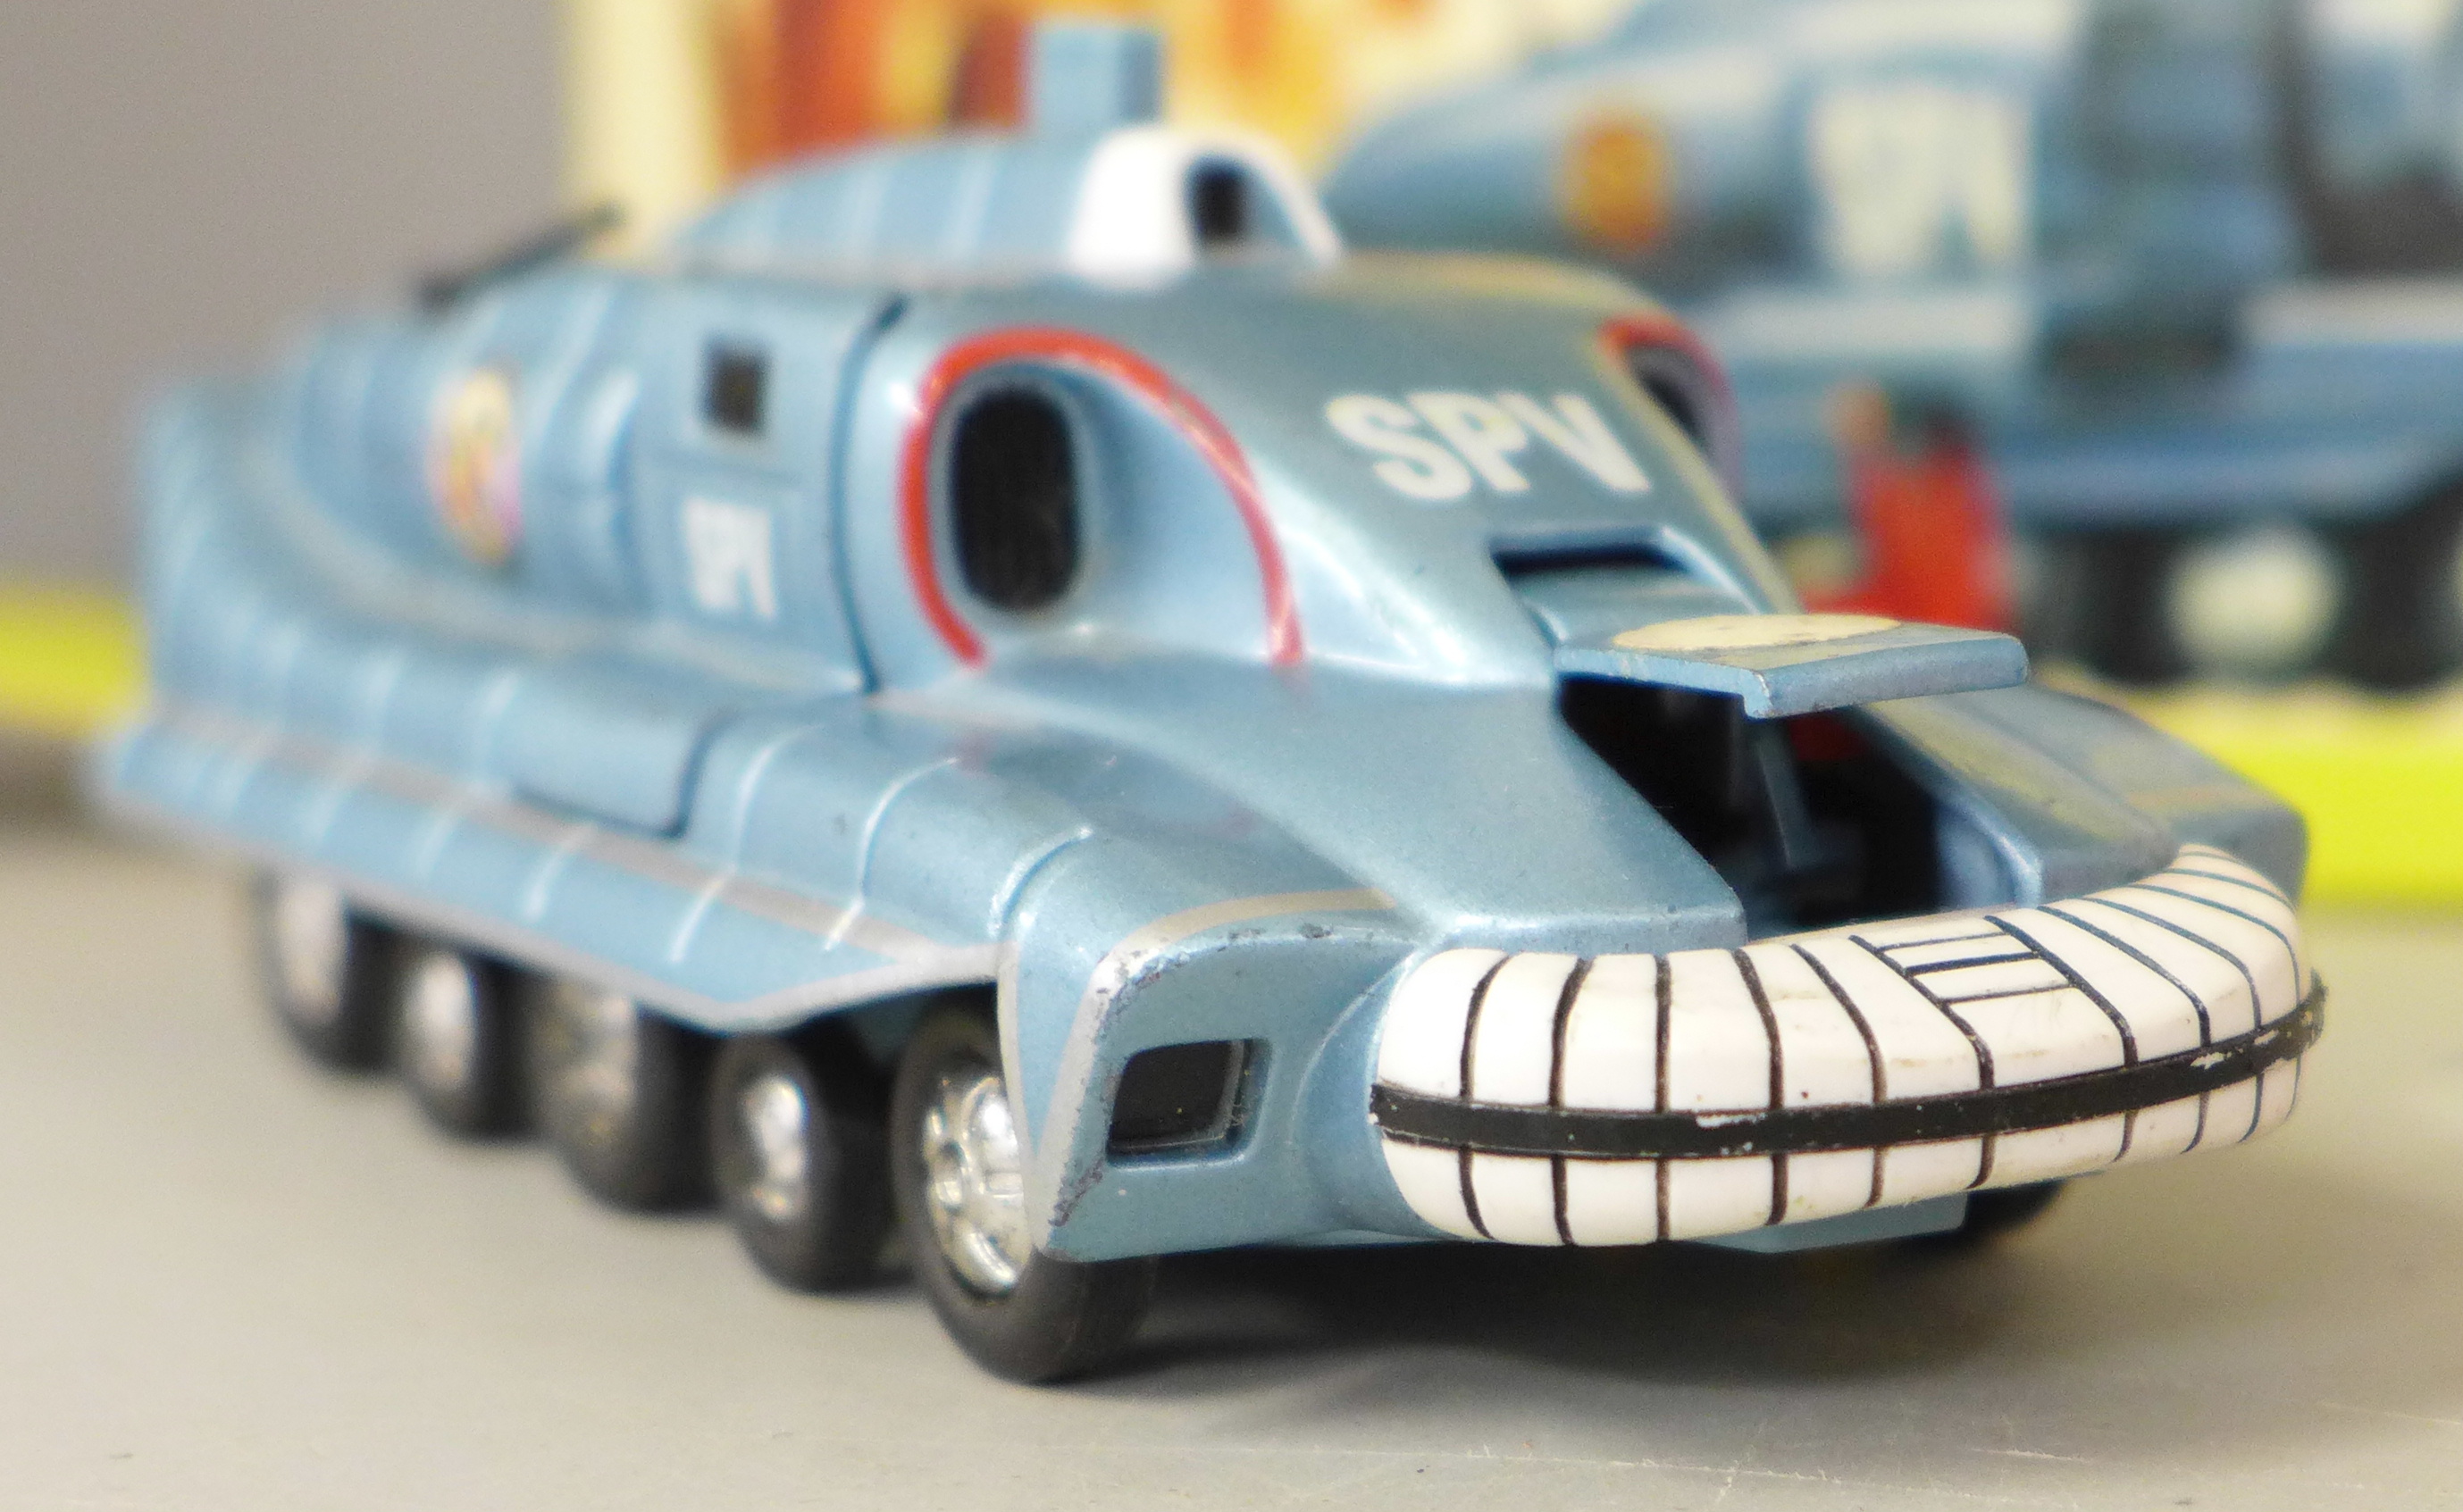 A die-cast Schuco Racer 1036/1, Dinky Toys Captain Scarlet Spectrum Pursuit Vehicle, box a/f, - Image 4 of 7